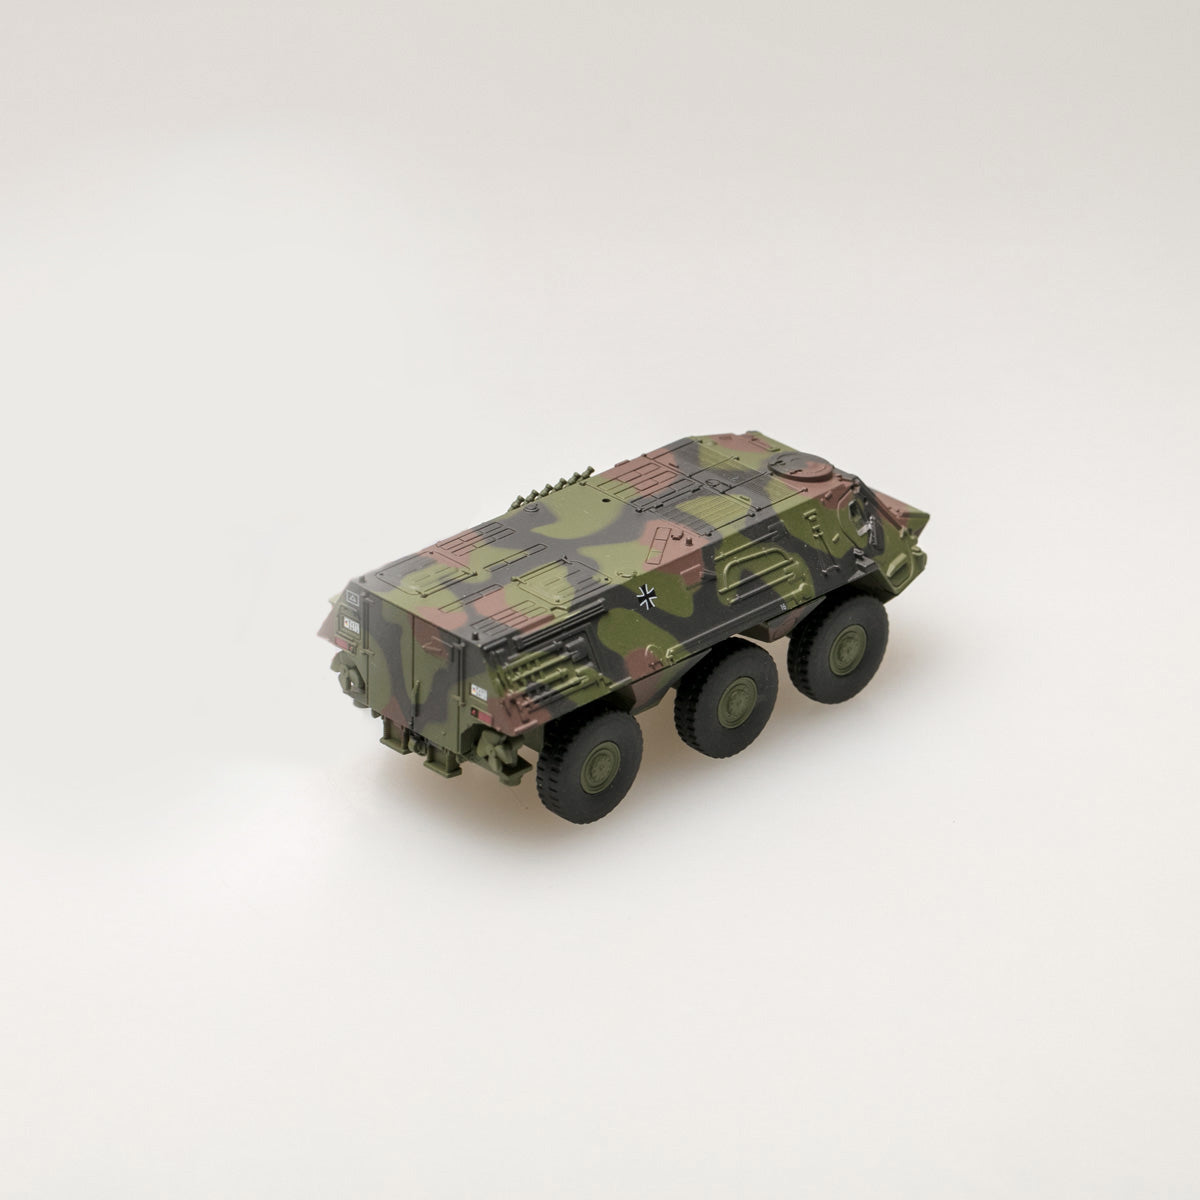 Schuco 1:87 Fuchs infantry transport vehicle Bundeswehr camouflaged 452635800